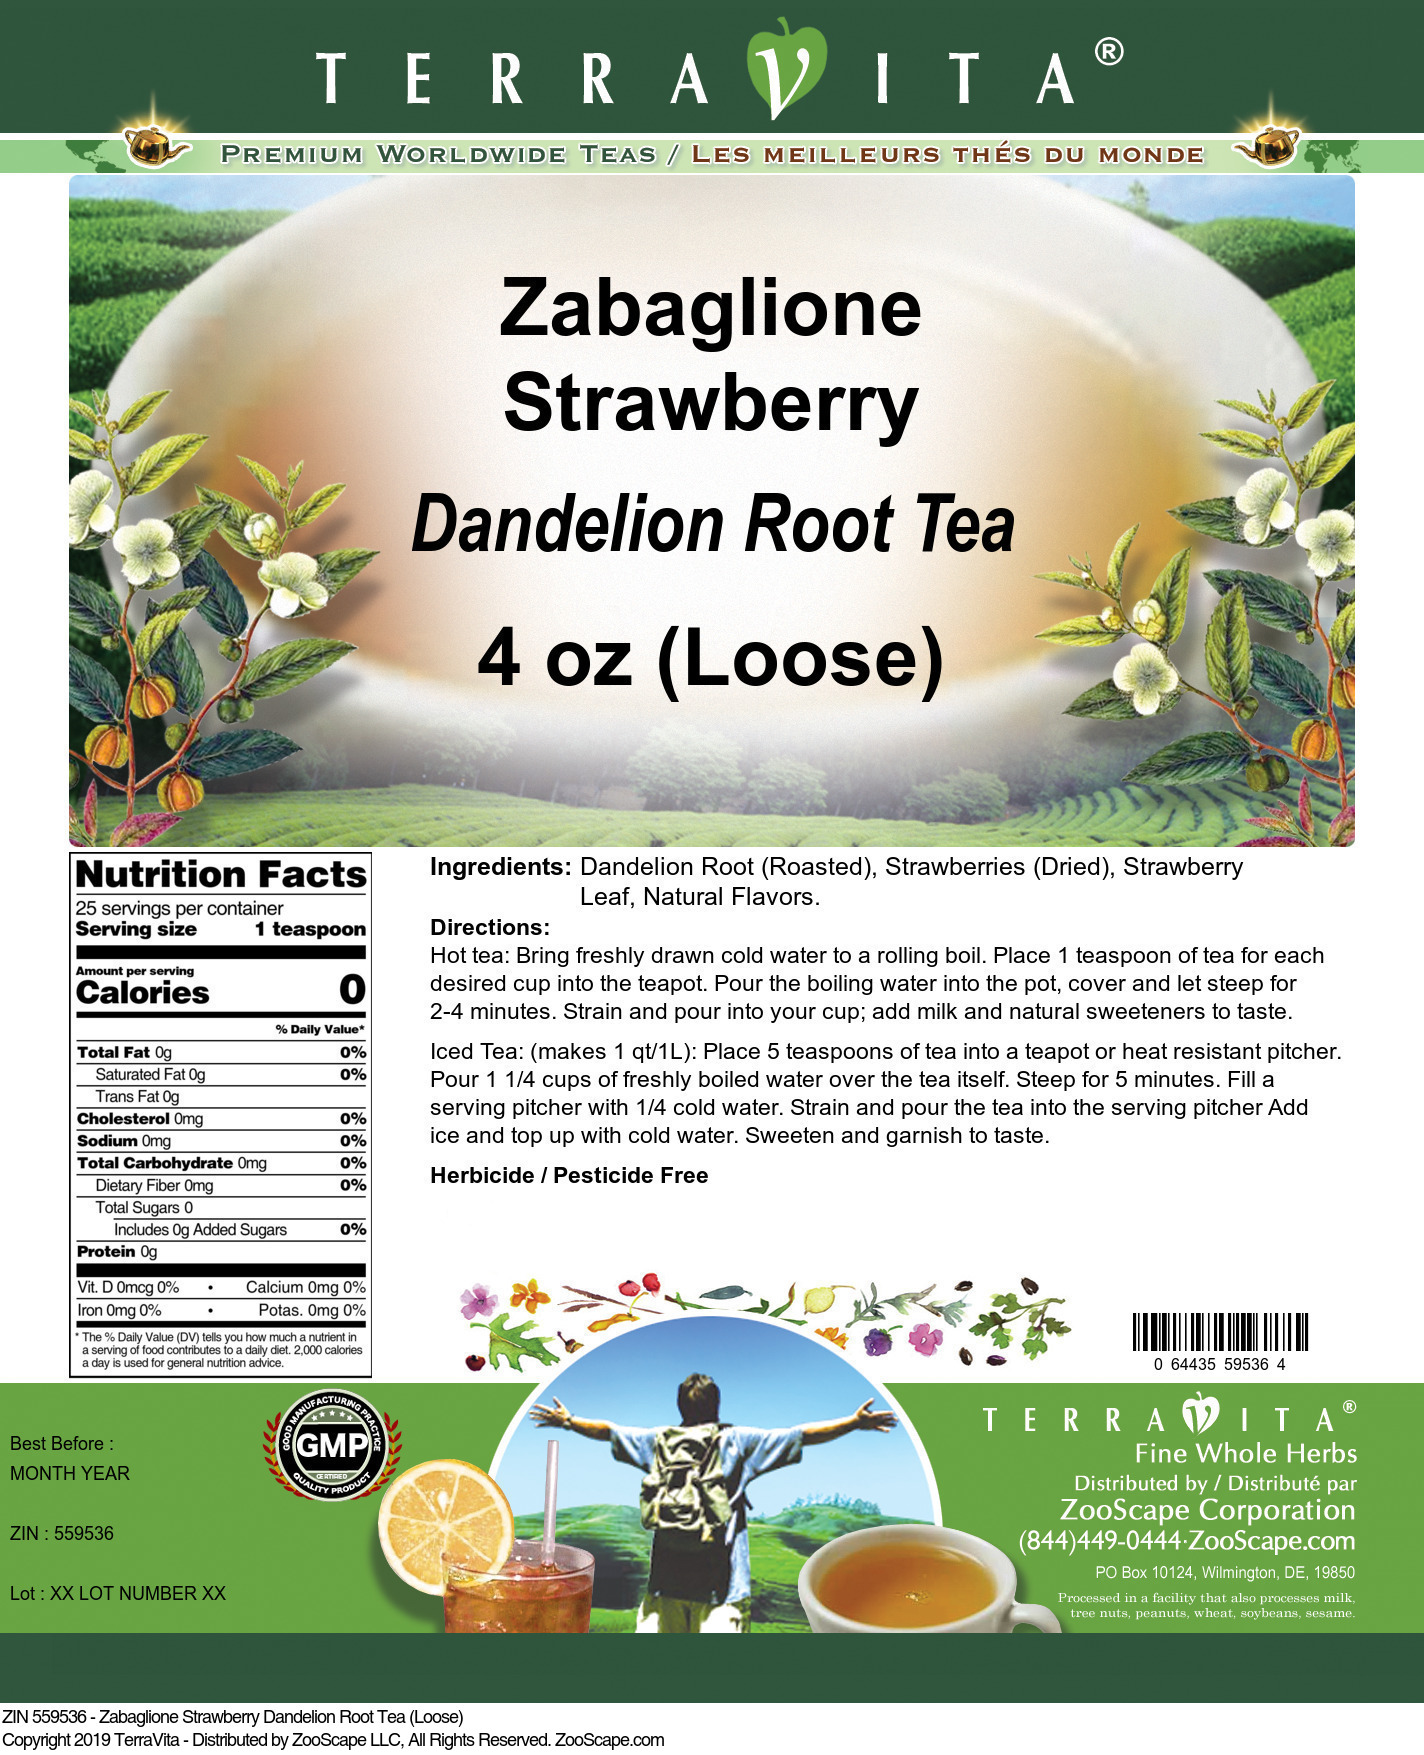 Zabaglione Strawberry Dandelion Root Tea (Loose) - Label